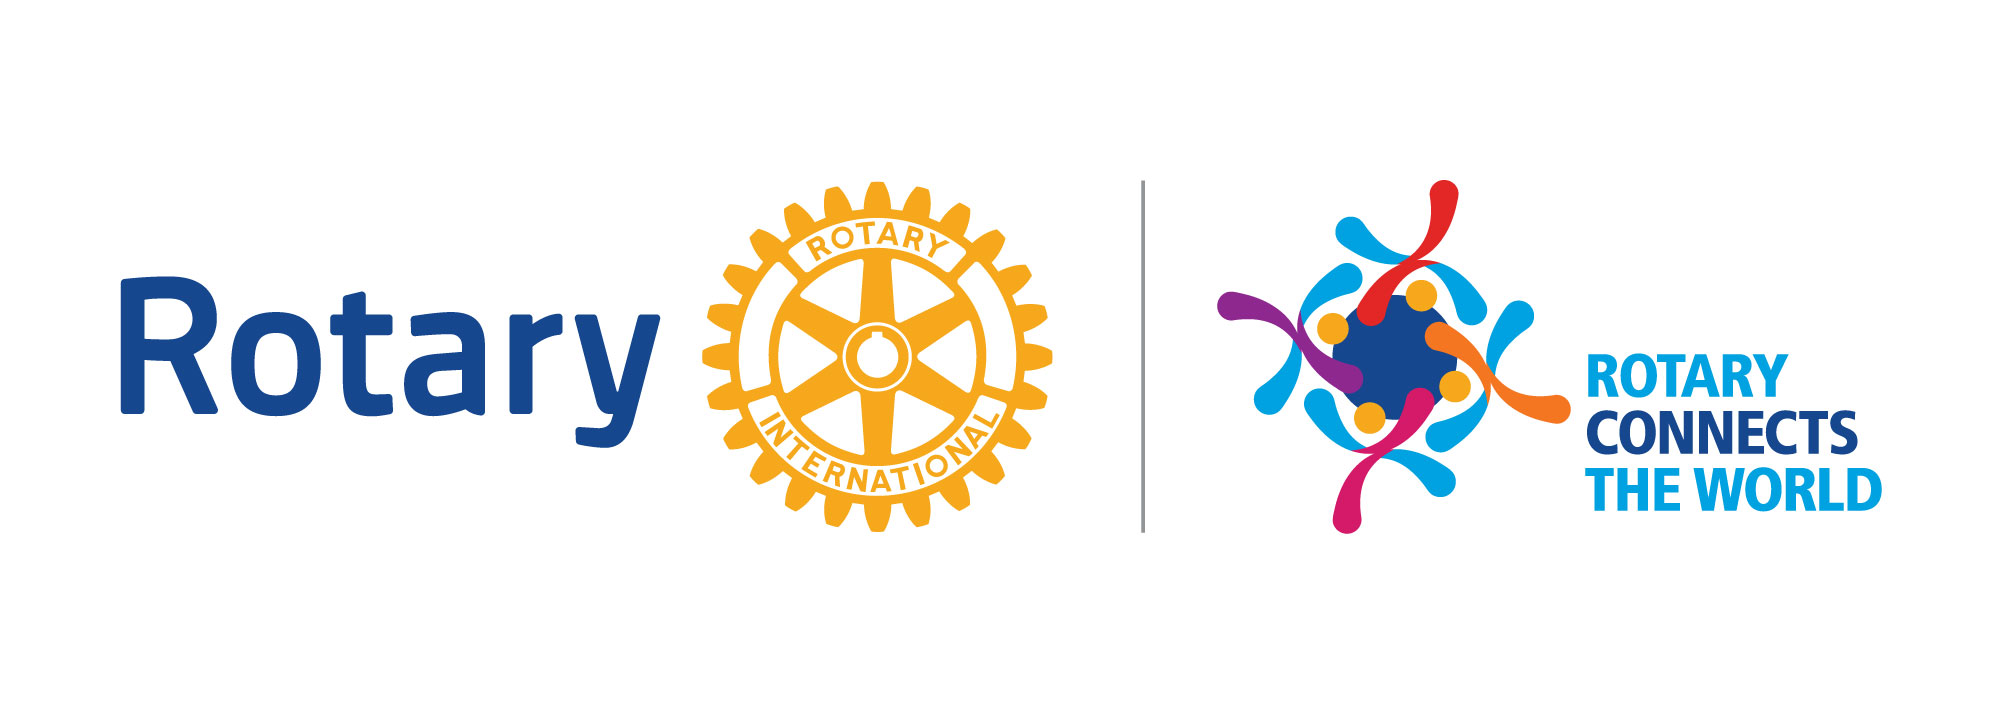 Happy New Rotary Year 20192020 Rotary Club of Maraval